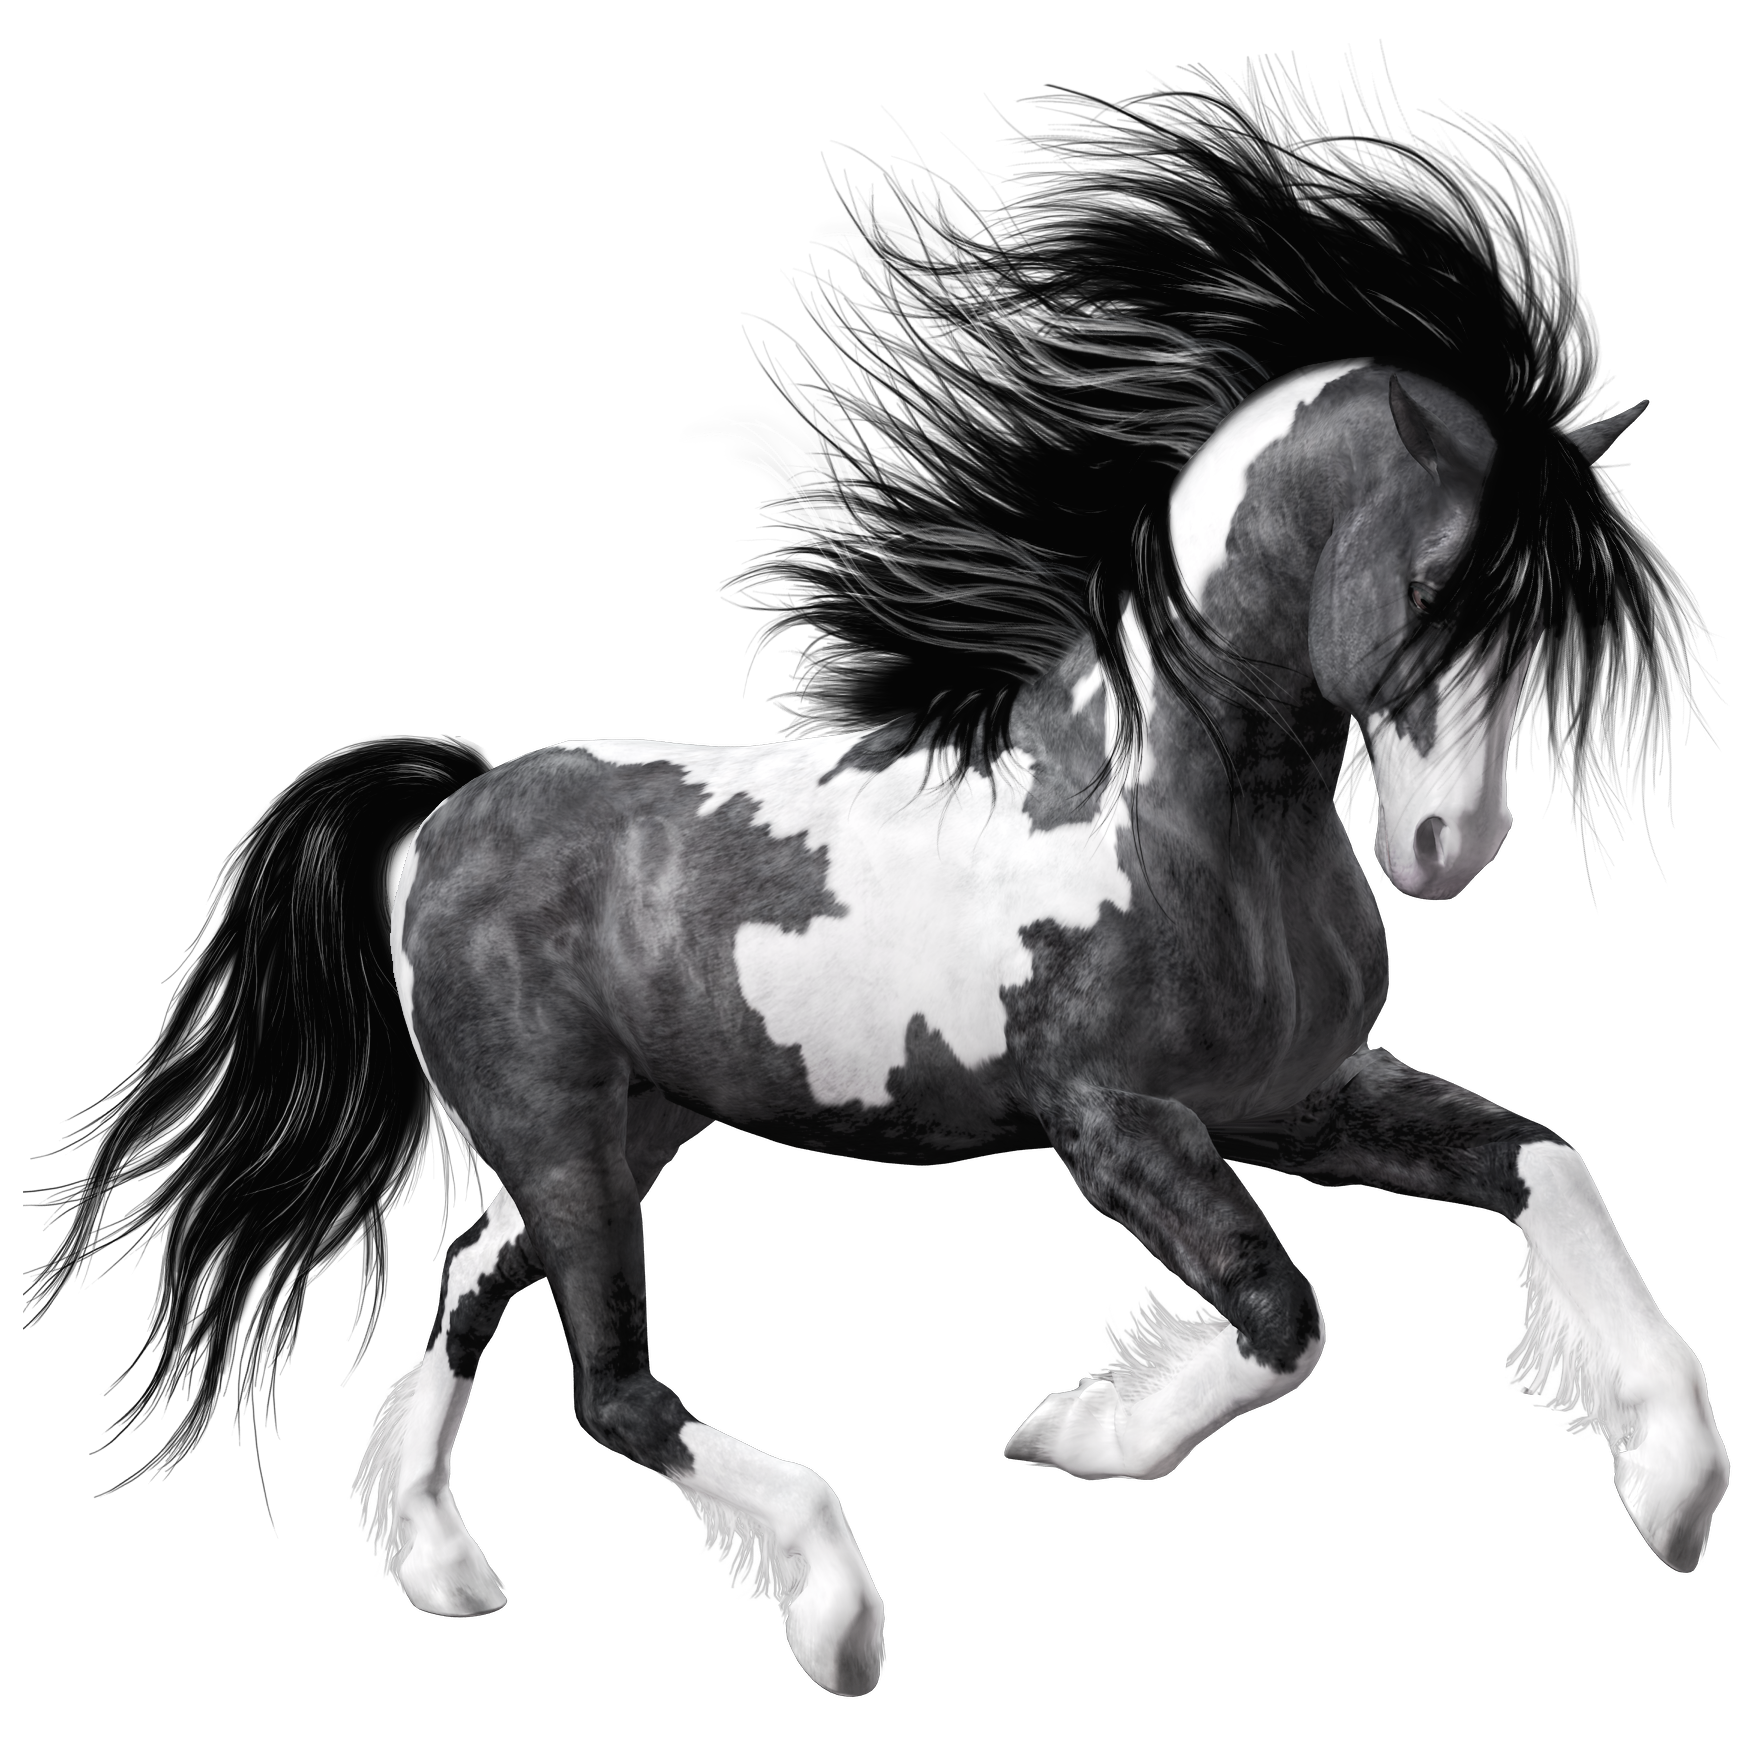 دانلود خفن ترین عکس اسب سیاه سفید پی ان جی PNG و دور بریده شده 